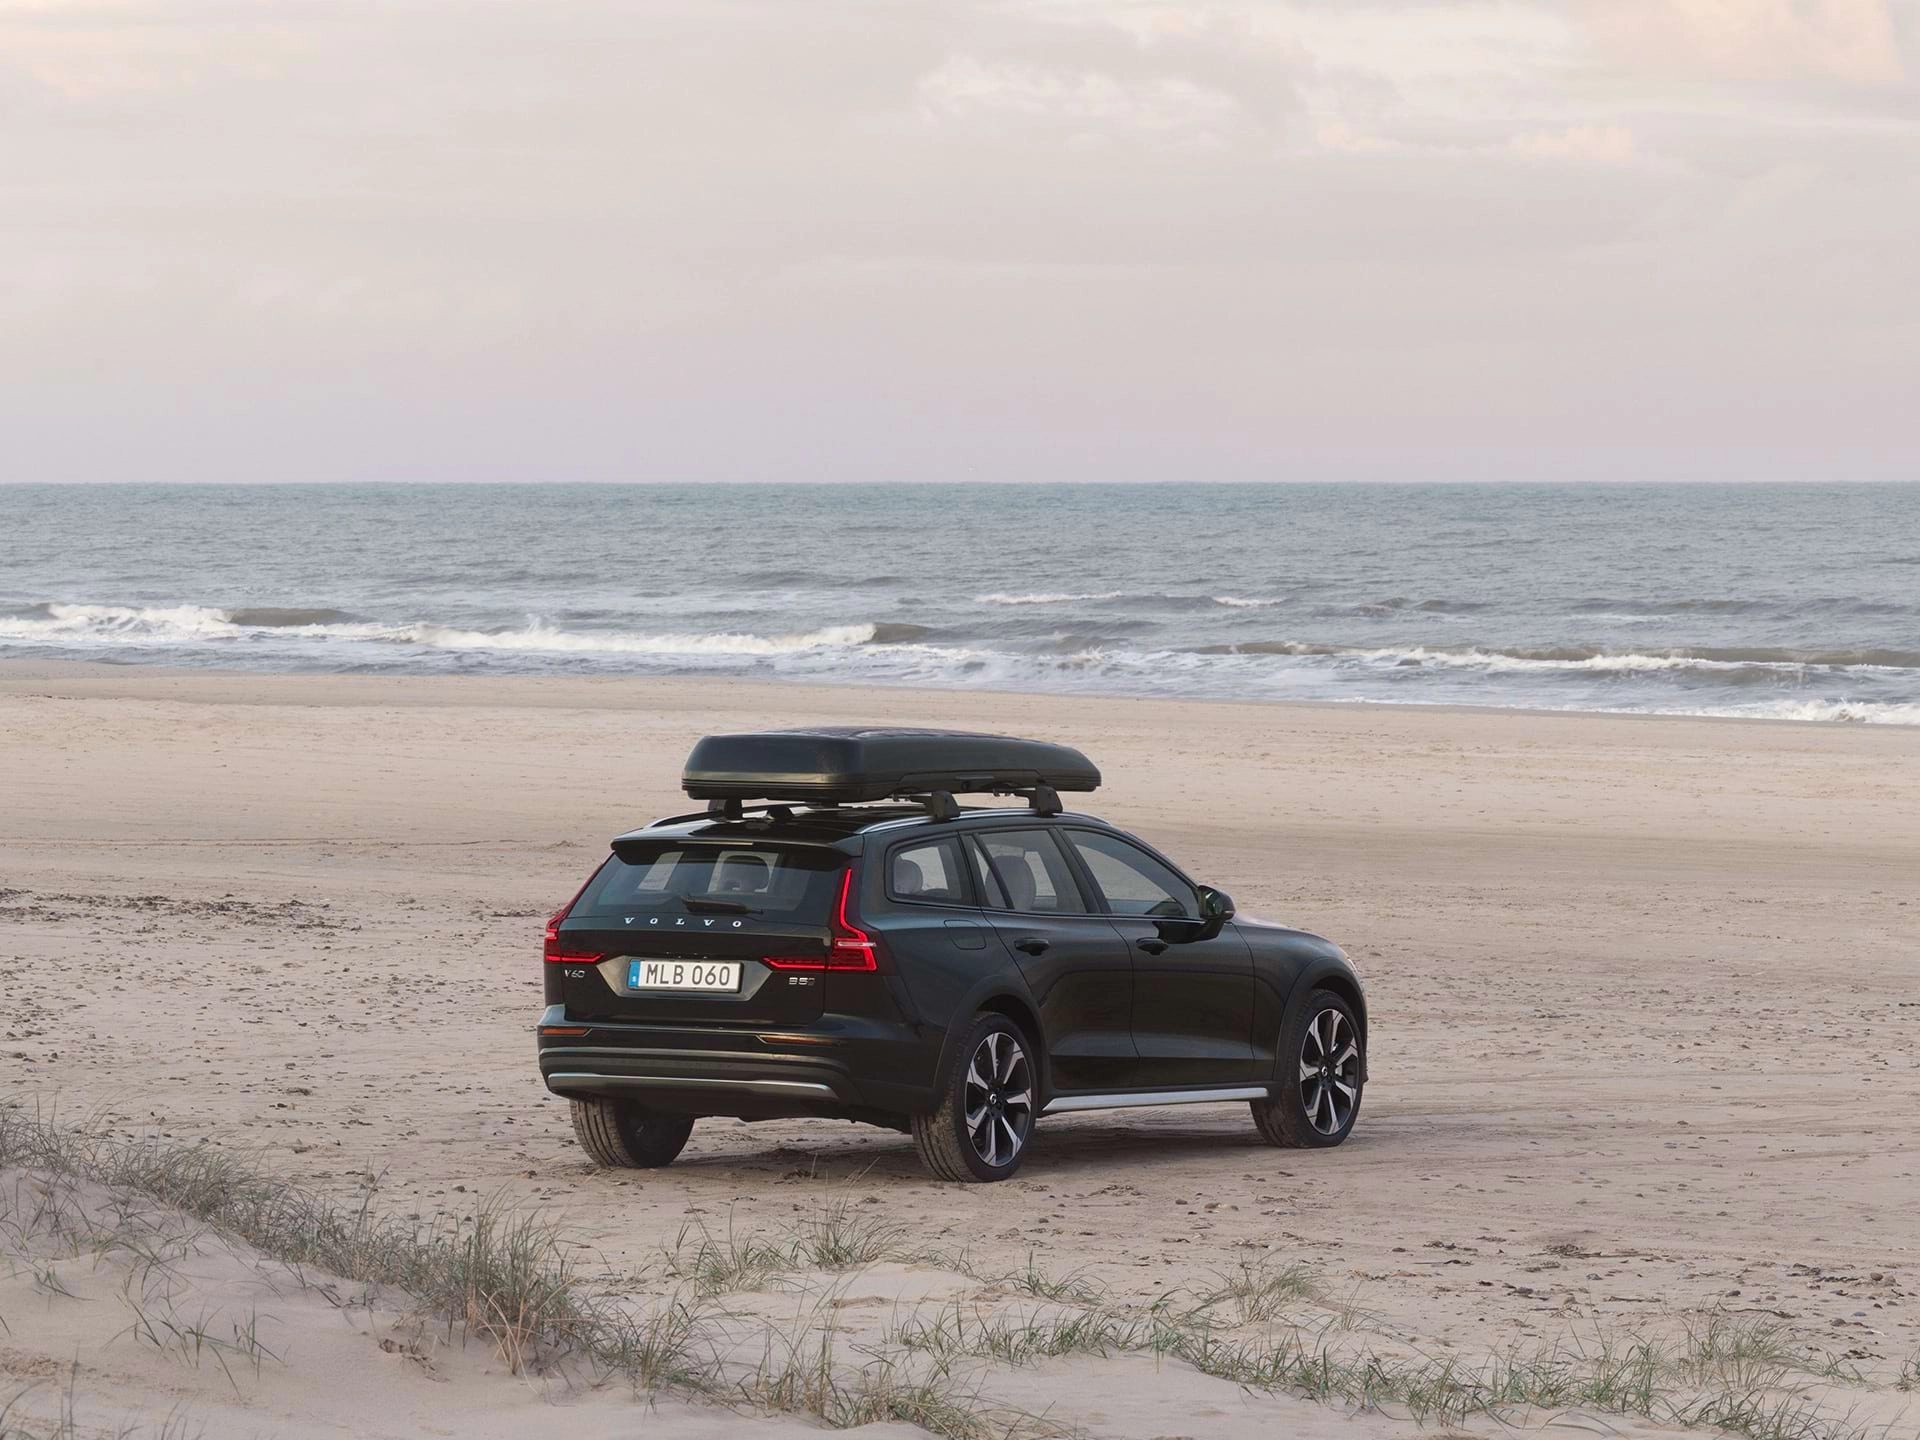 Un vehículo familiar Volvo con un baúl de techo estacionado sobre la arena en una playa.